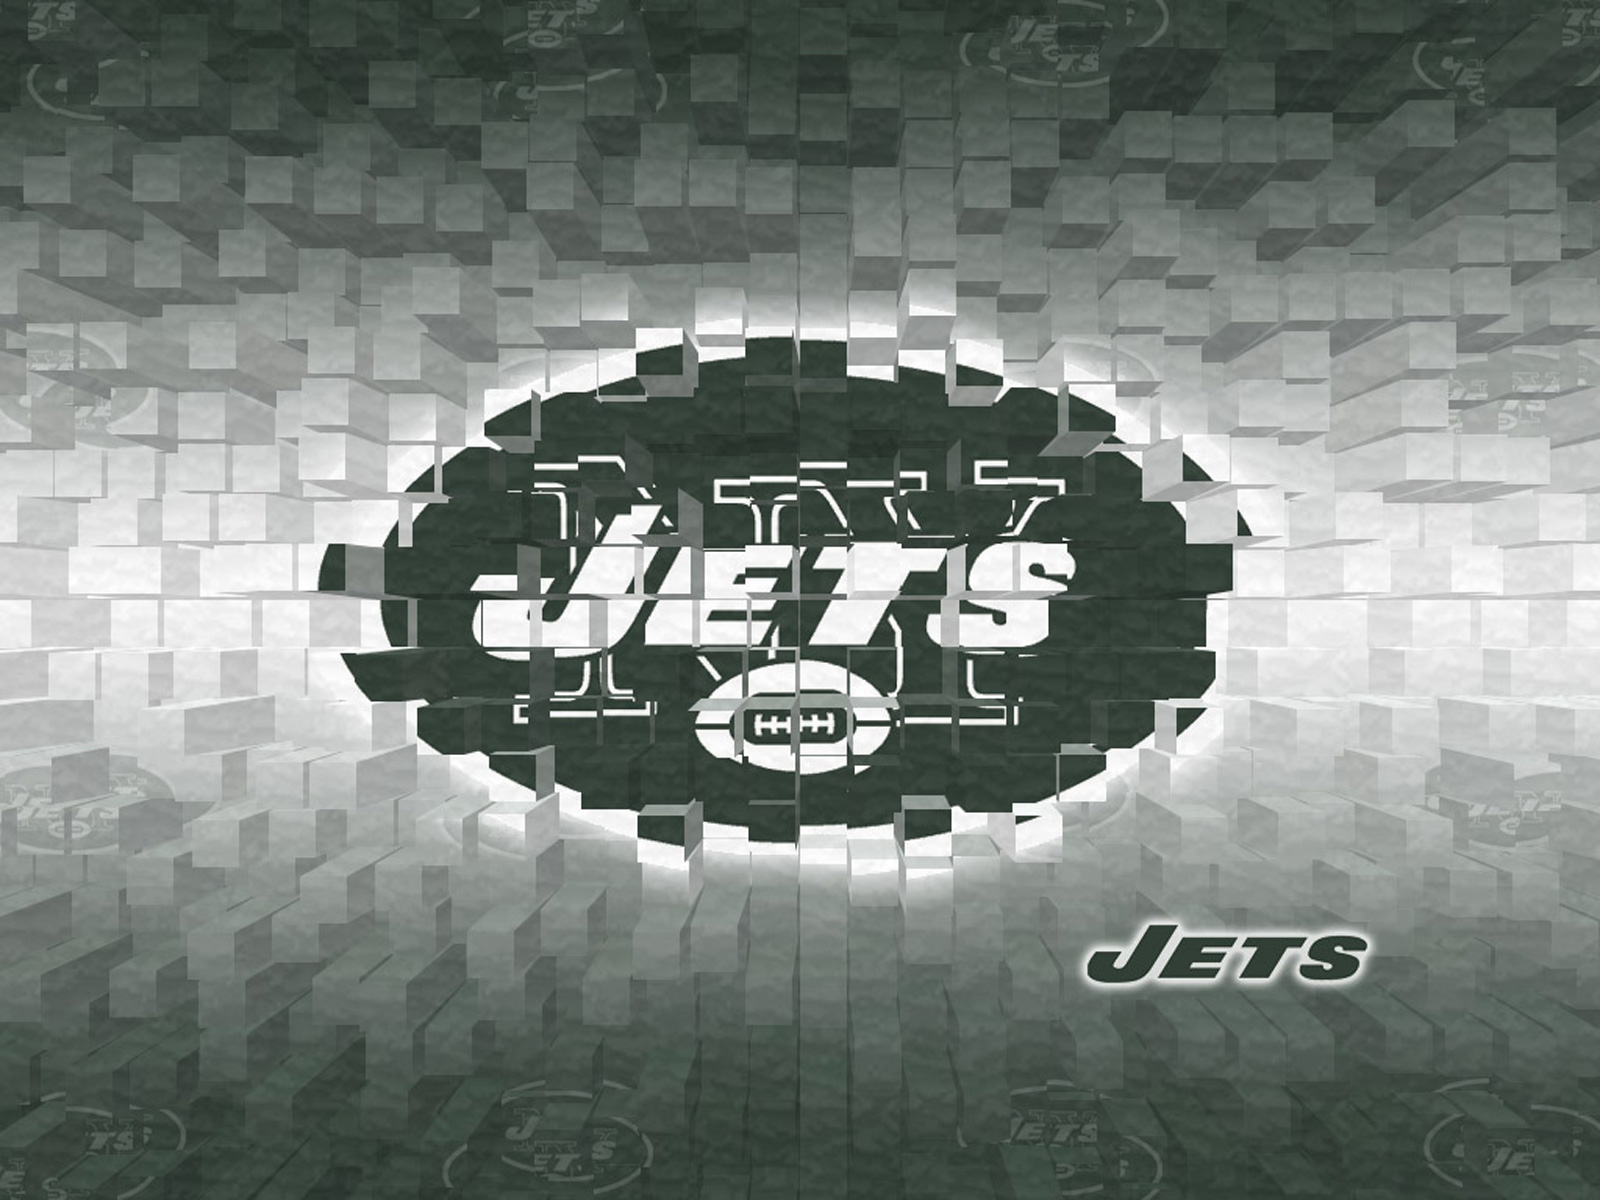 Ny jets wallpaper